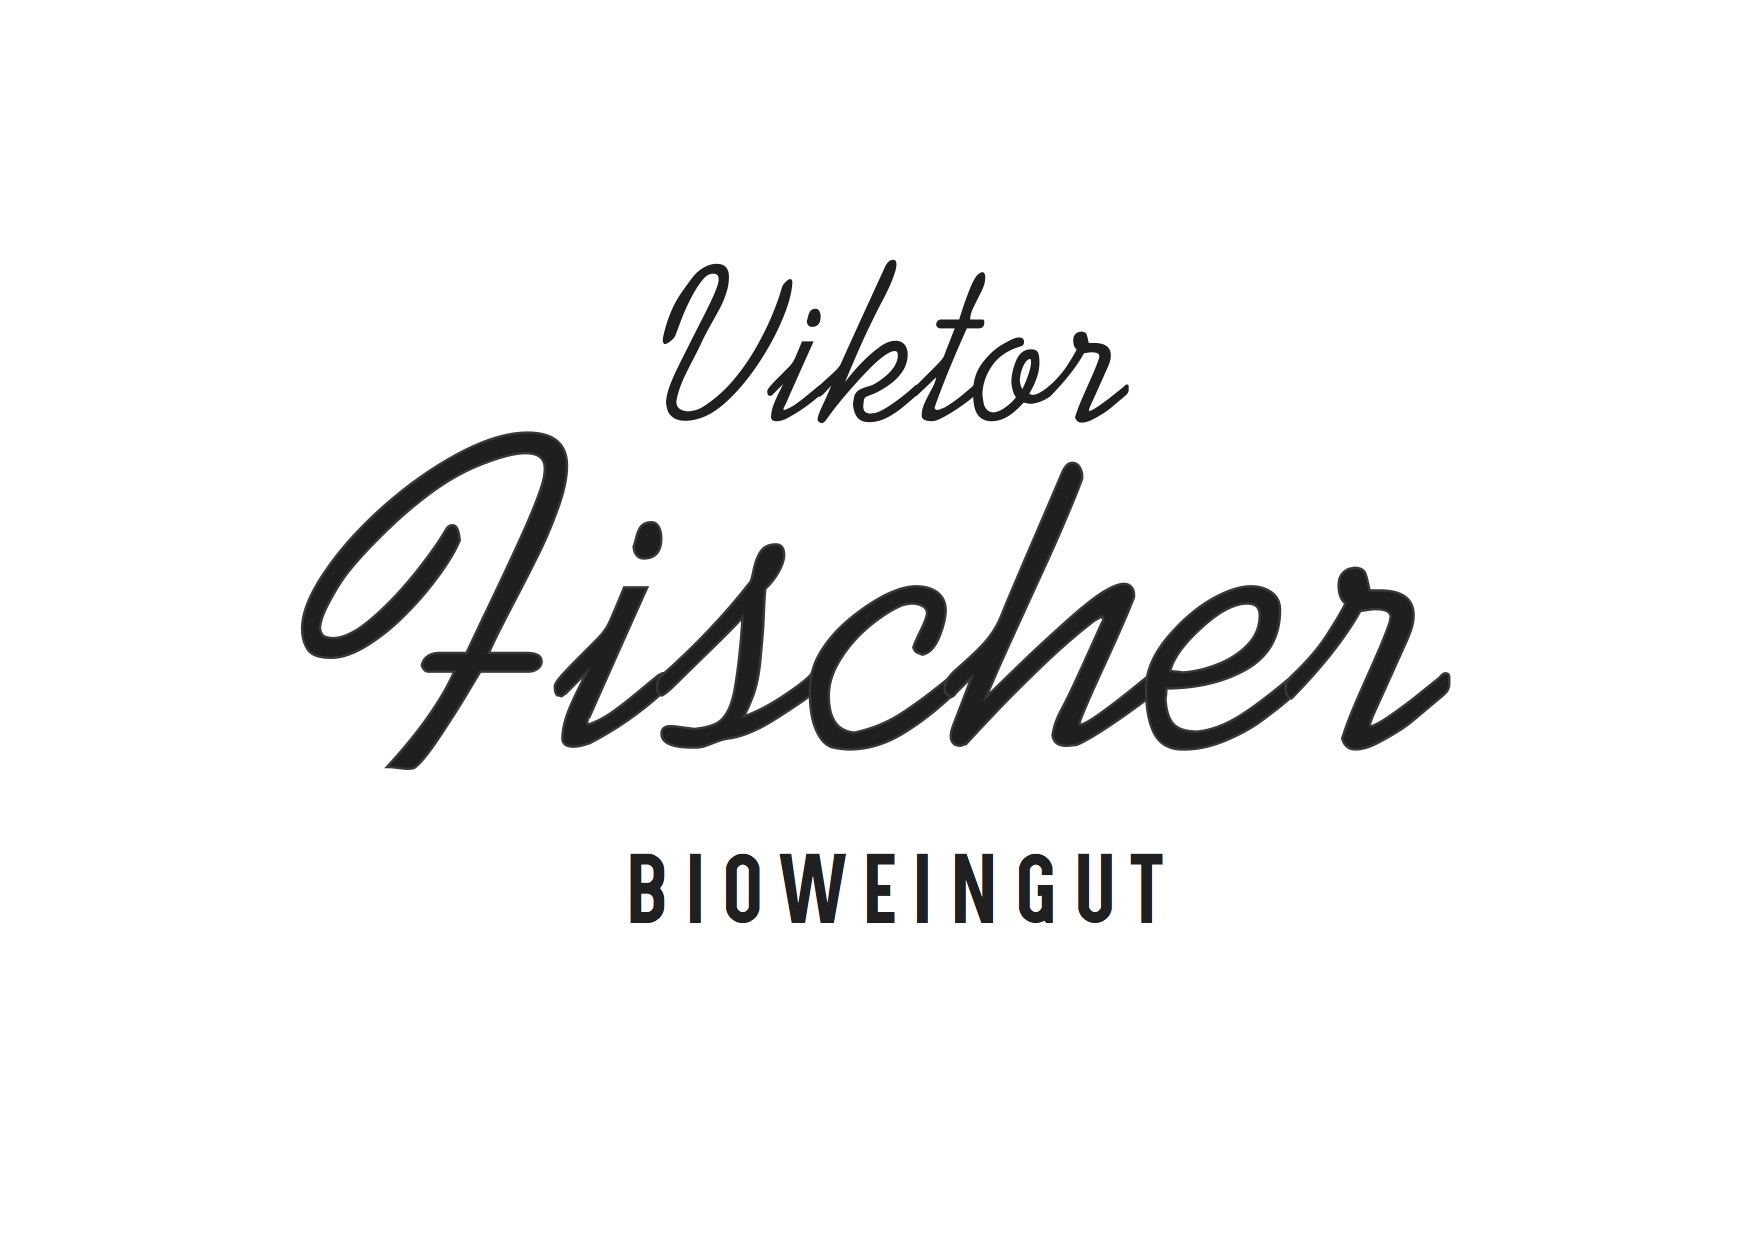 Bioweingut Viktor Fischer